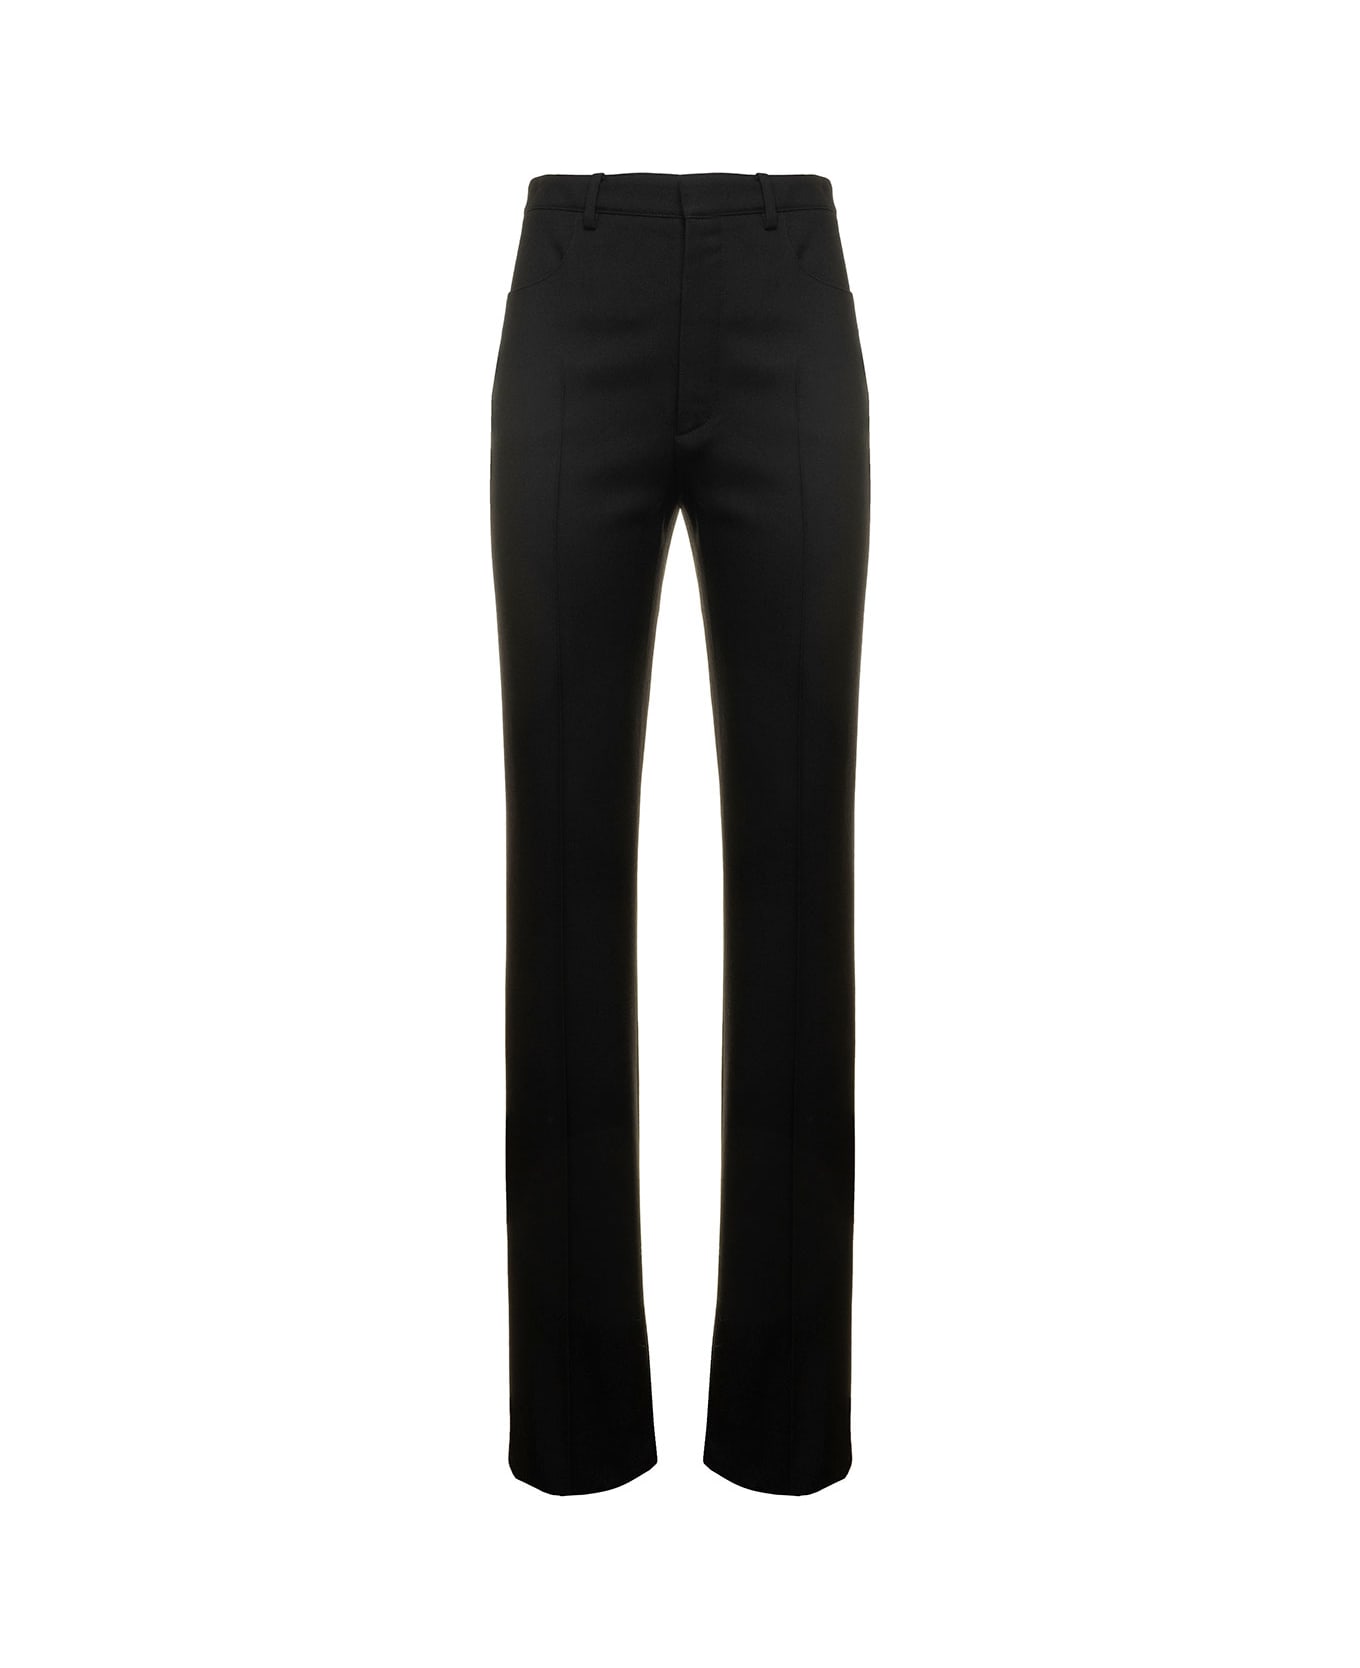 Saint Laurent Black Slim High Waisted Pants In Wool Woman - Black